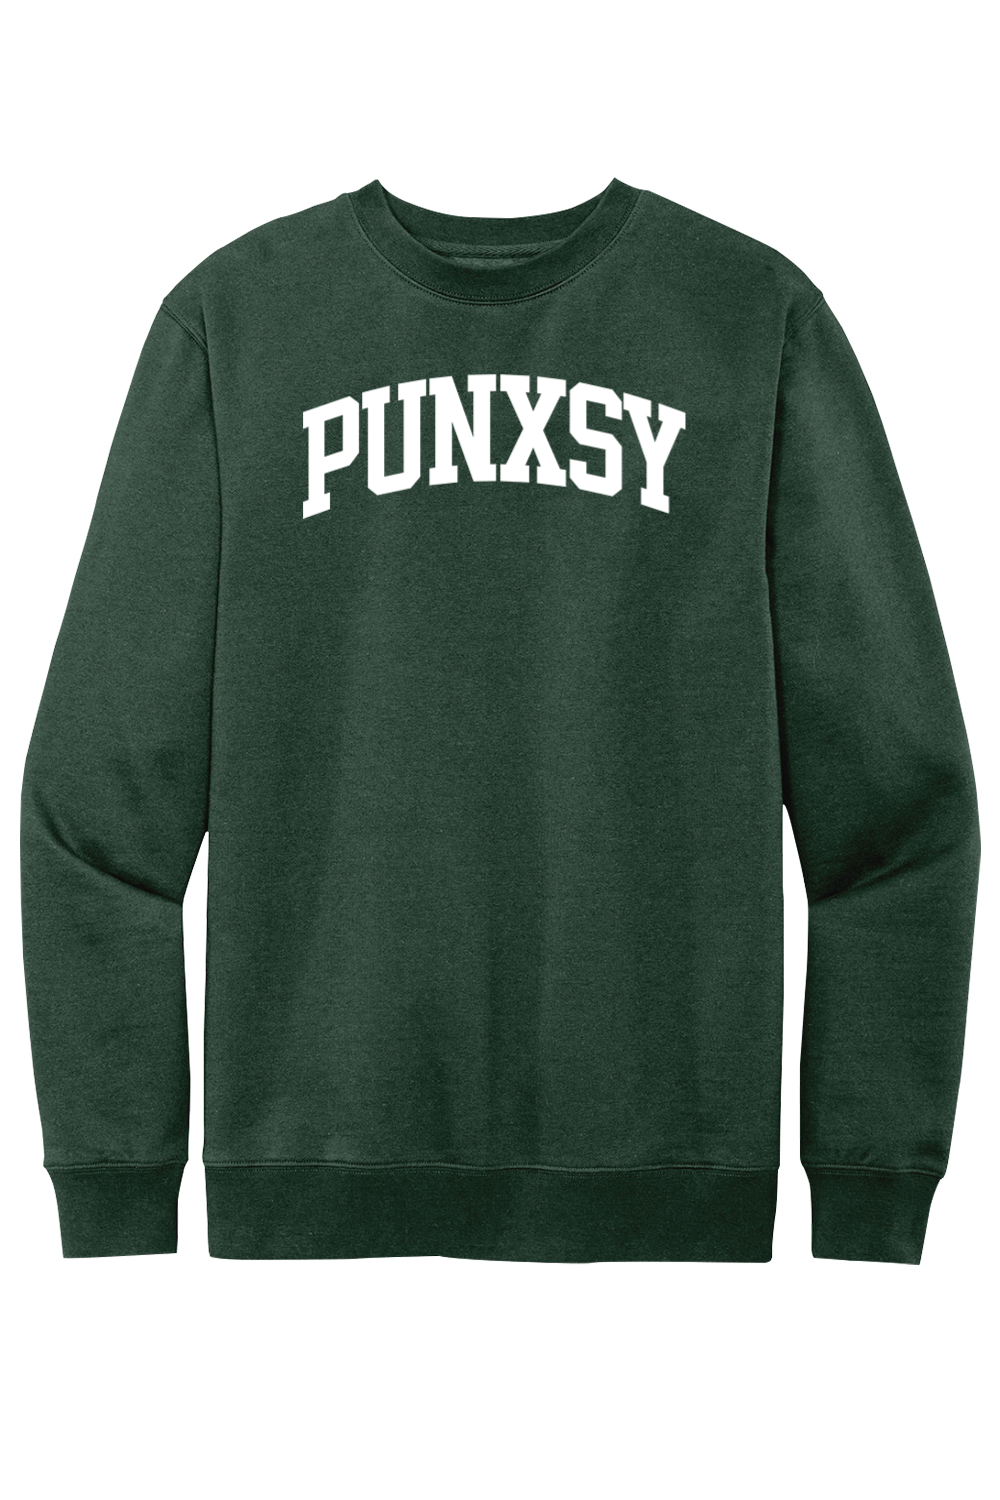 Punxsy Collegiate - Fleece Crewneck Sweatshirt - Yinzylvania